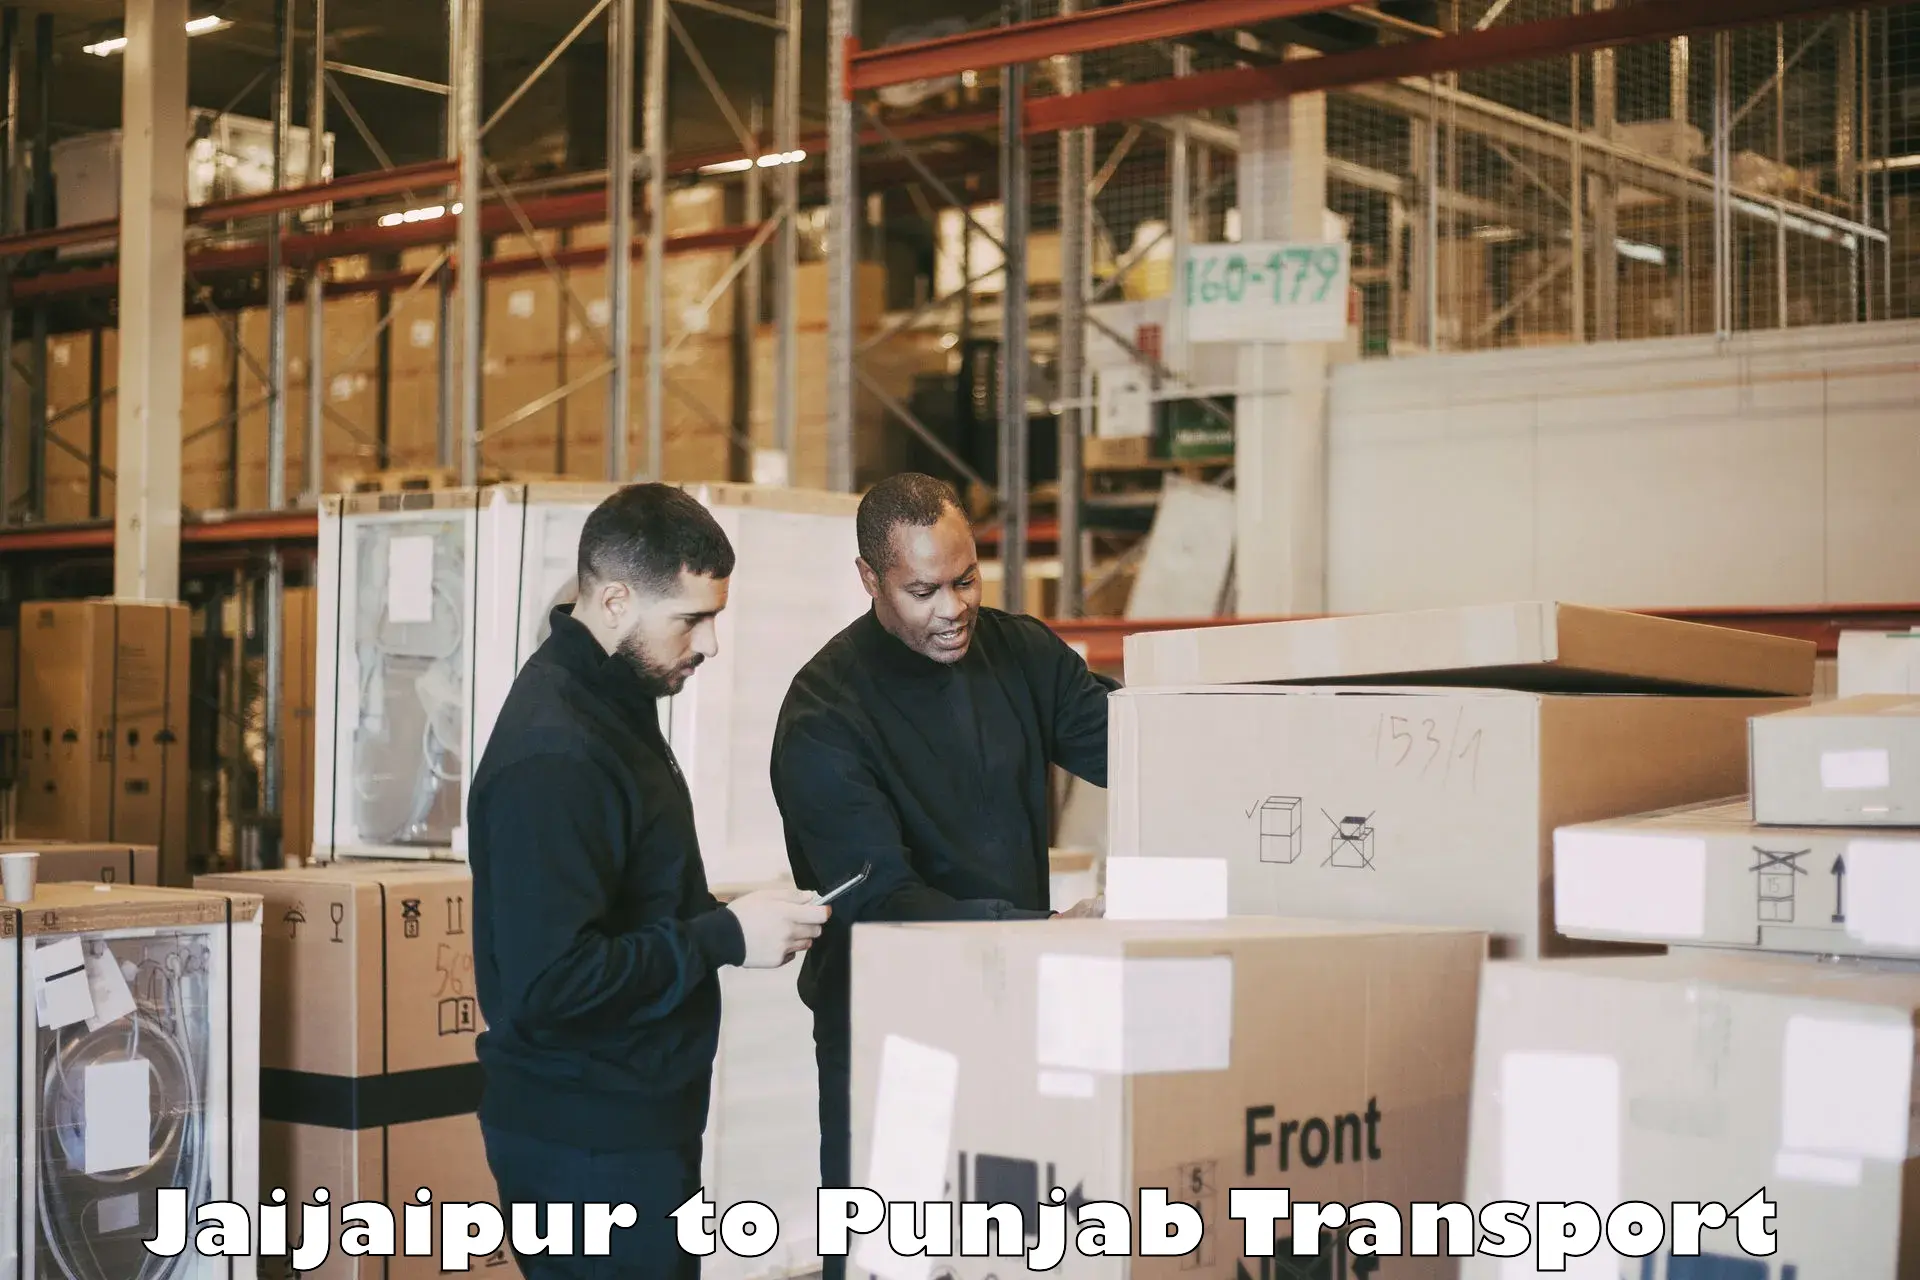 Pick up transport service Jaijaipur to Dhuri